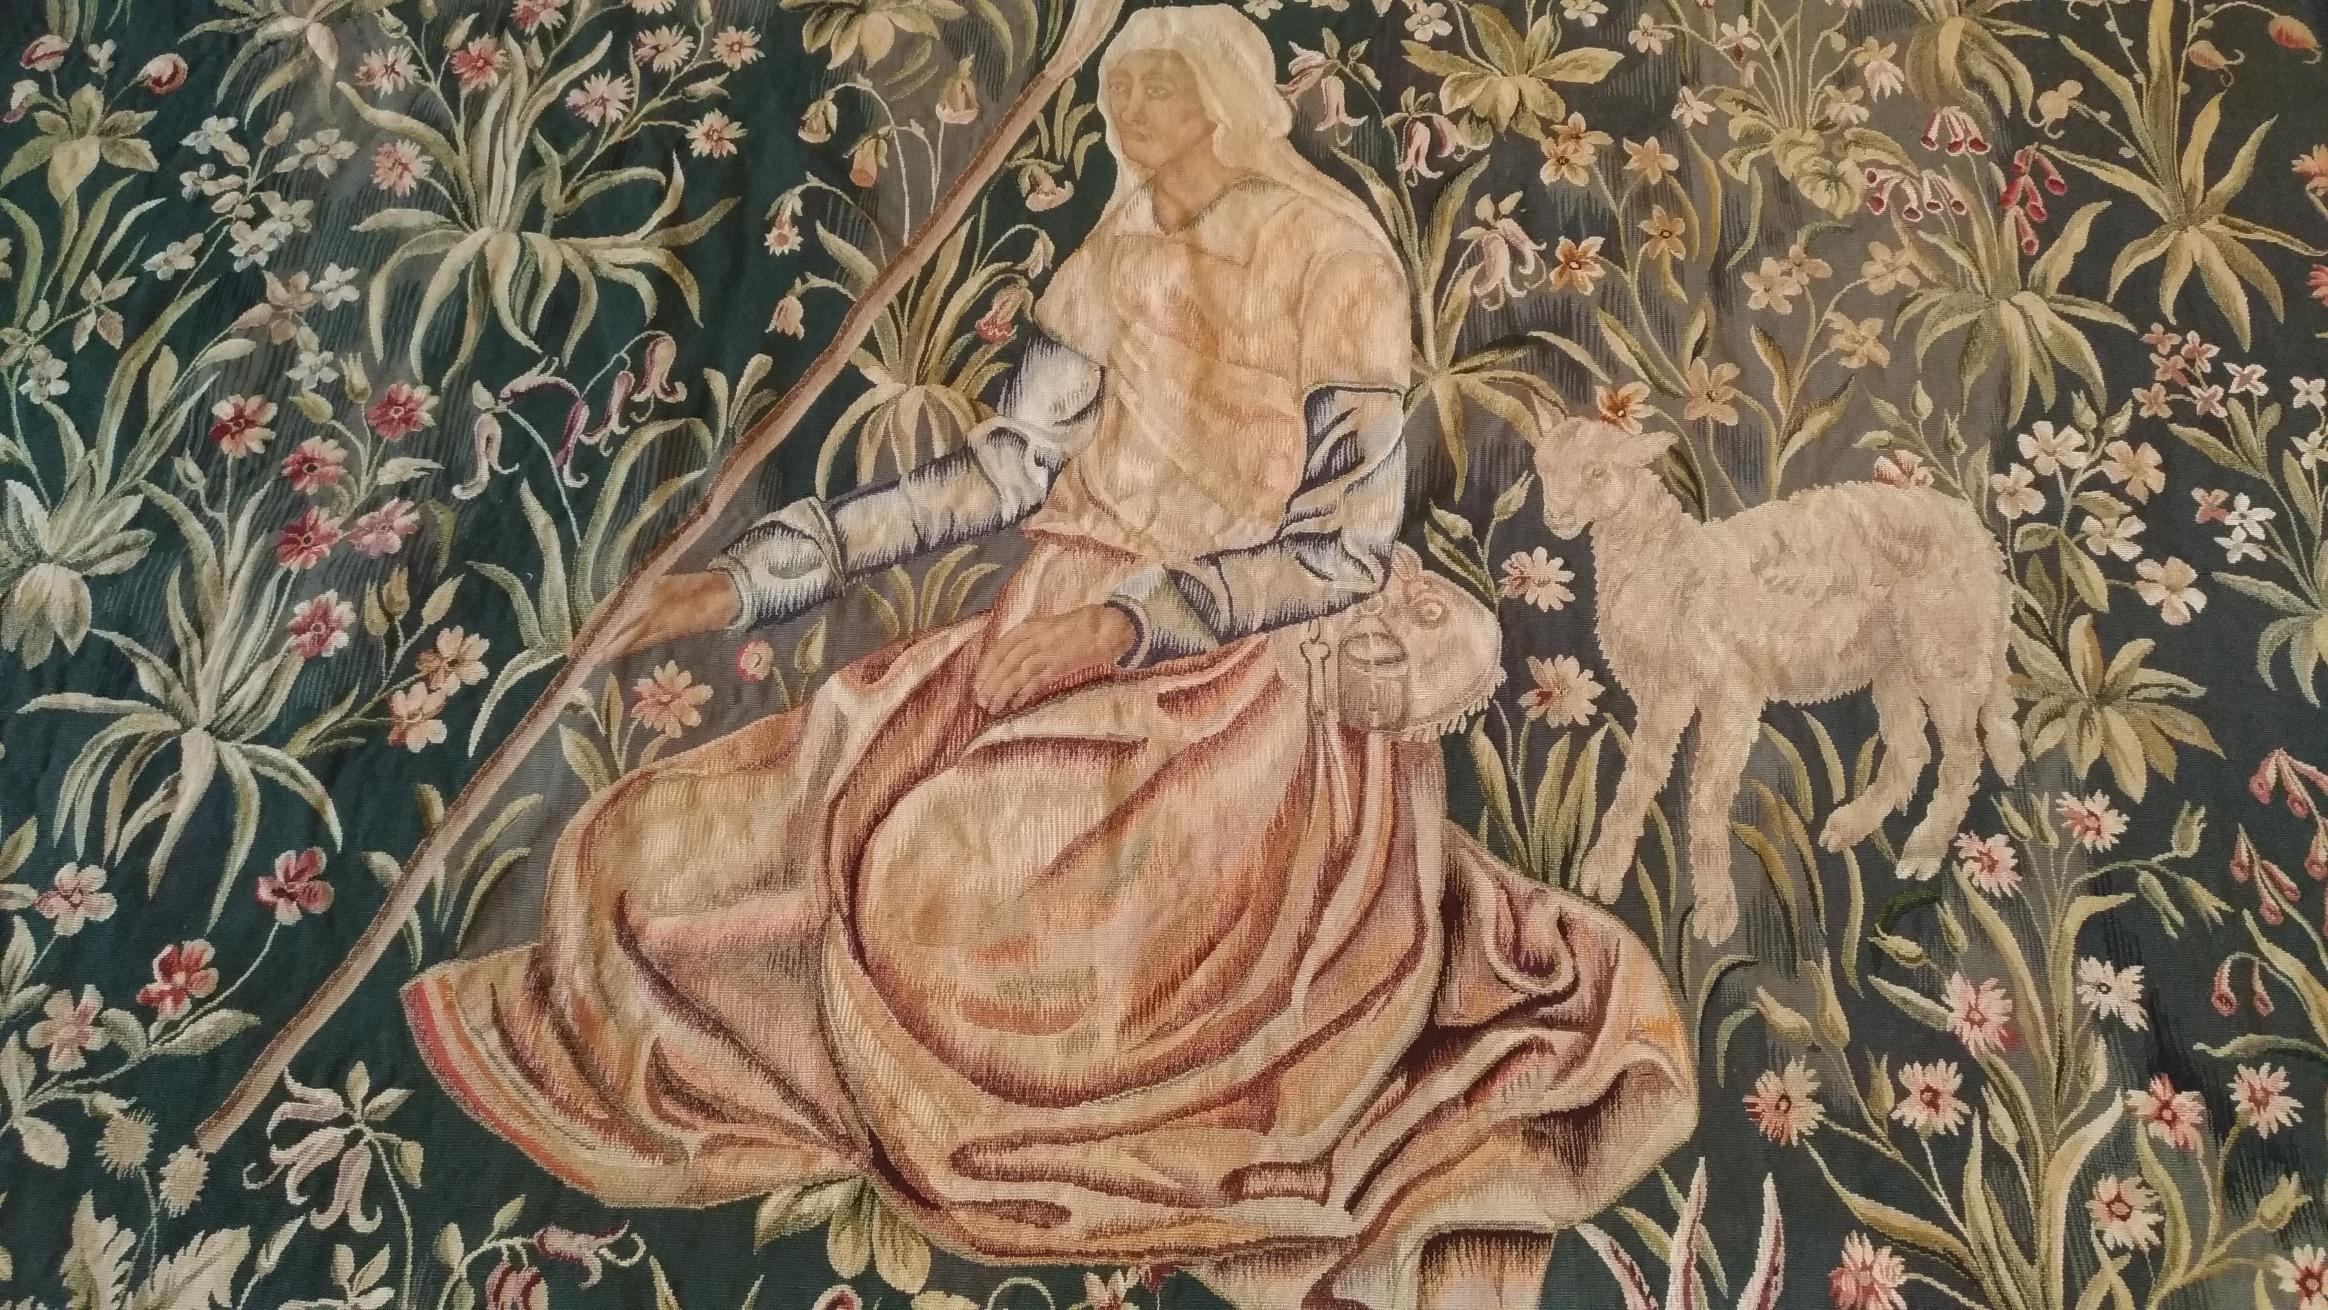 Tapisserie d'Aubusson - Berger Mouton - XIX E. siècle mille fleures gothique.
Grâce à notre atelier de restauration-conservation et aussi à notre savoir-faire, 
nous avons le plaisir de vous présenter des œuvres d'art en tissu telles que la